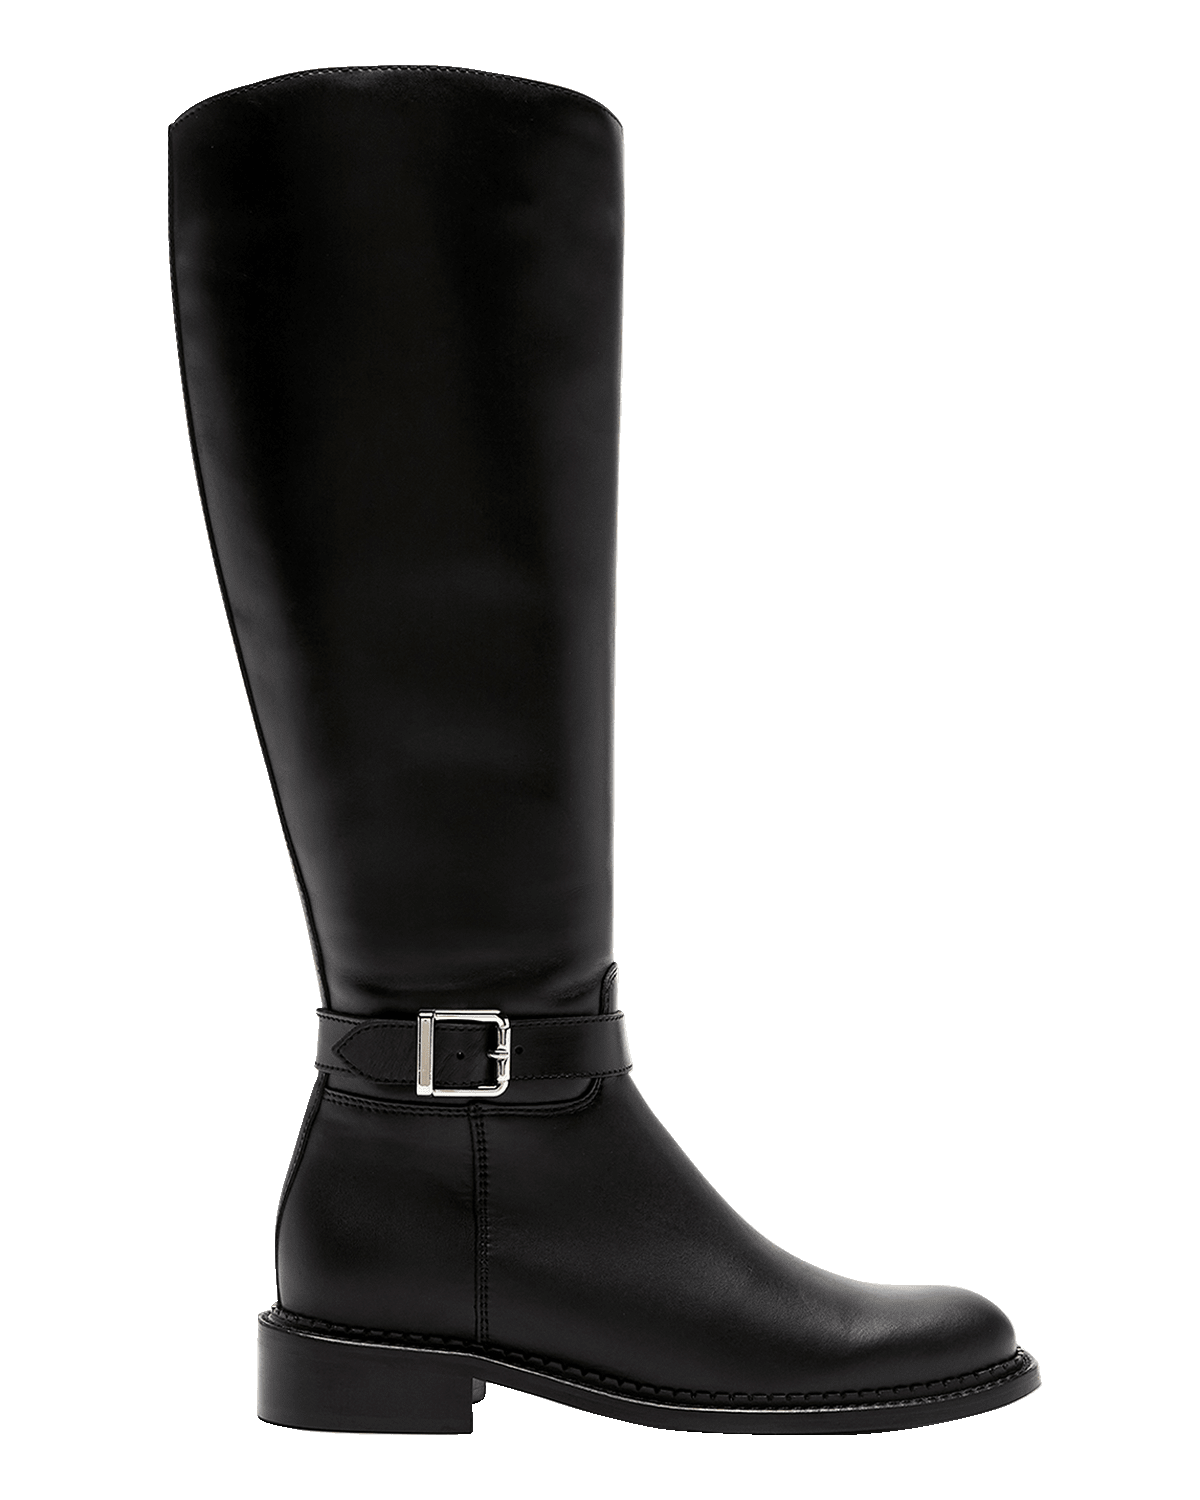 Veronica Beard Lisa Leather Stiletto Boots | Neiman Marcus